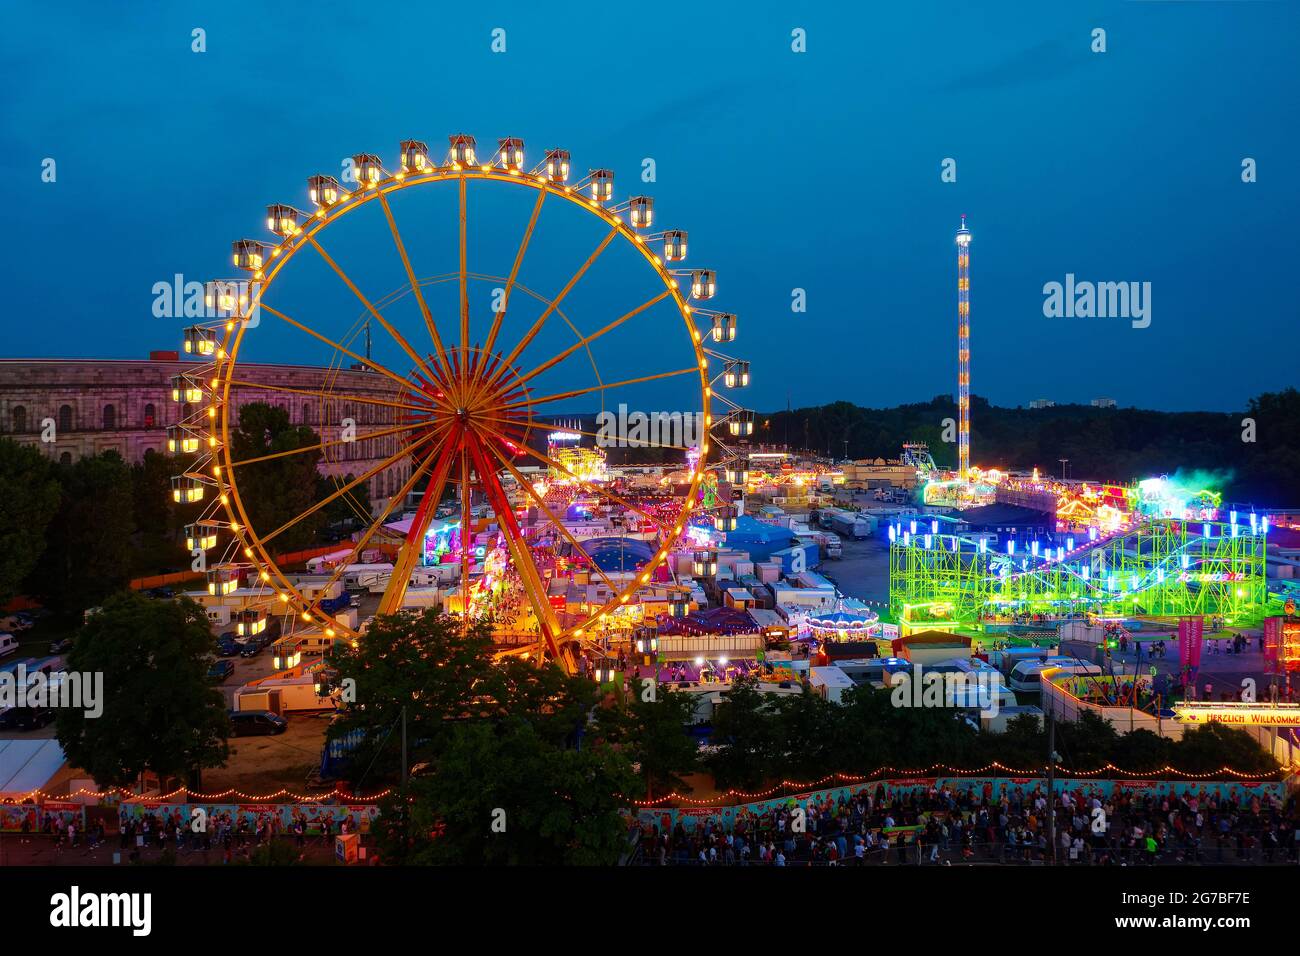 Vue aérienne, prise de vue de nuit, festival folklorique de Nuremberg NuernBaerLand avec grande roue, pendant la pandémie de Corona, foire, Nuremberg, moyenne-Franconie Banque D'Images